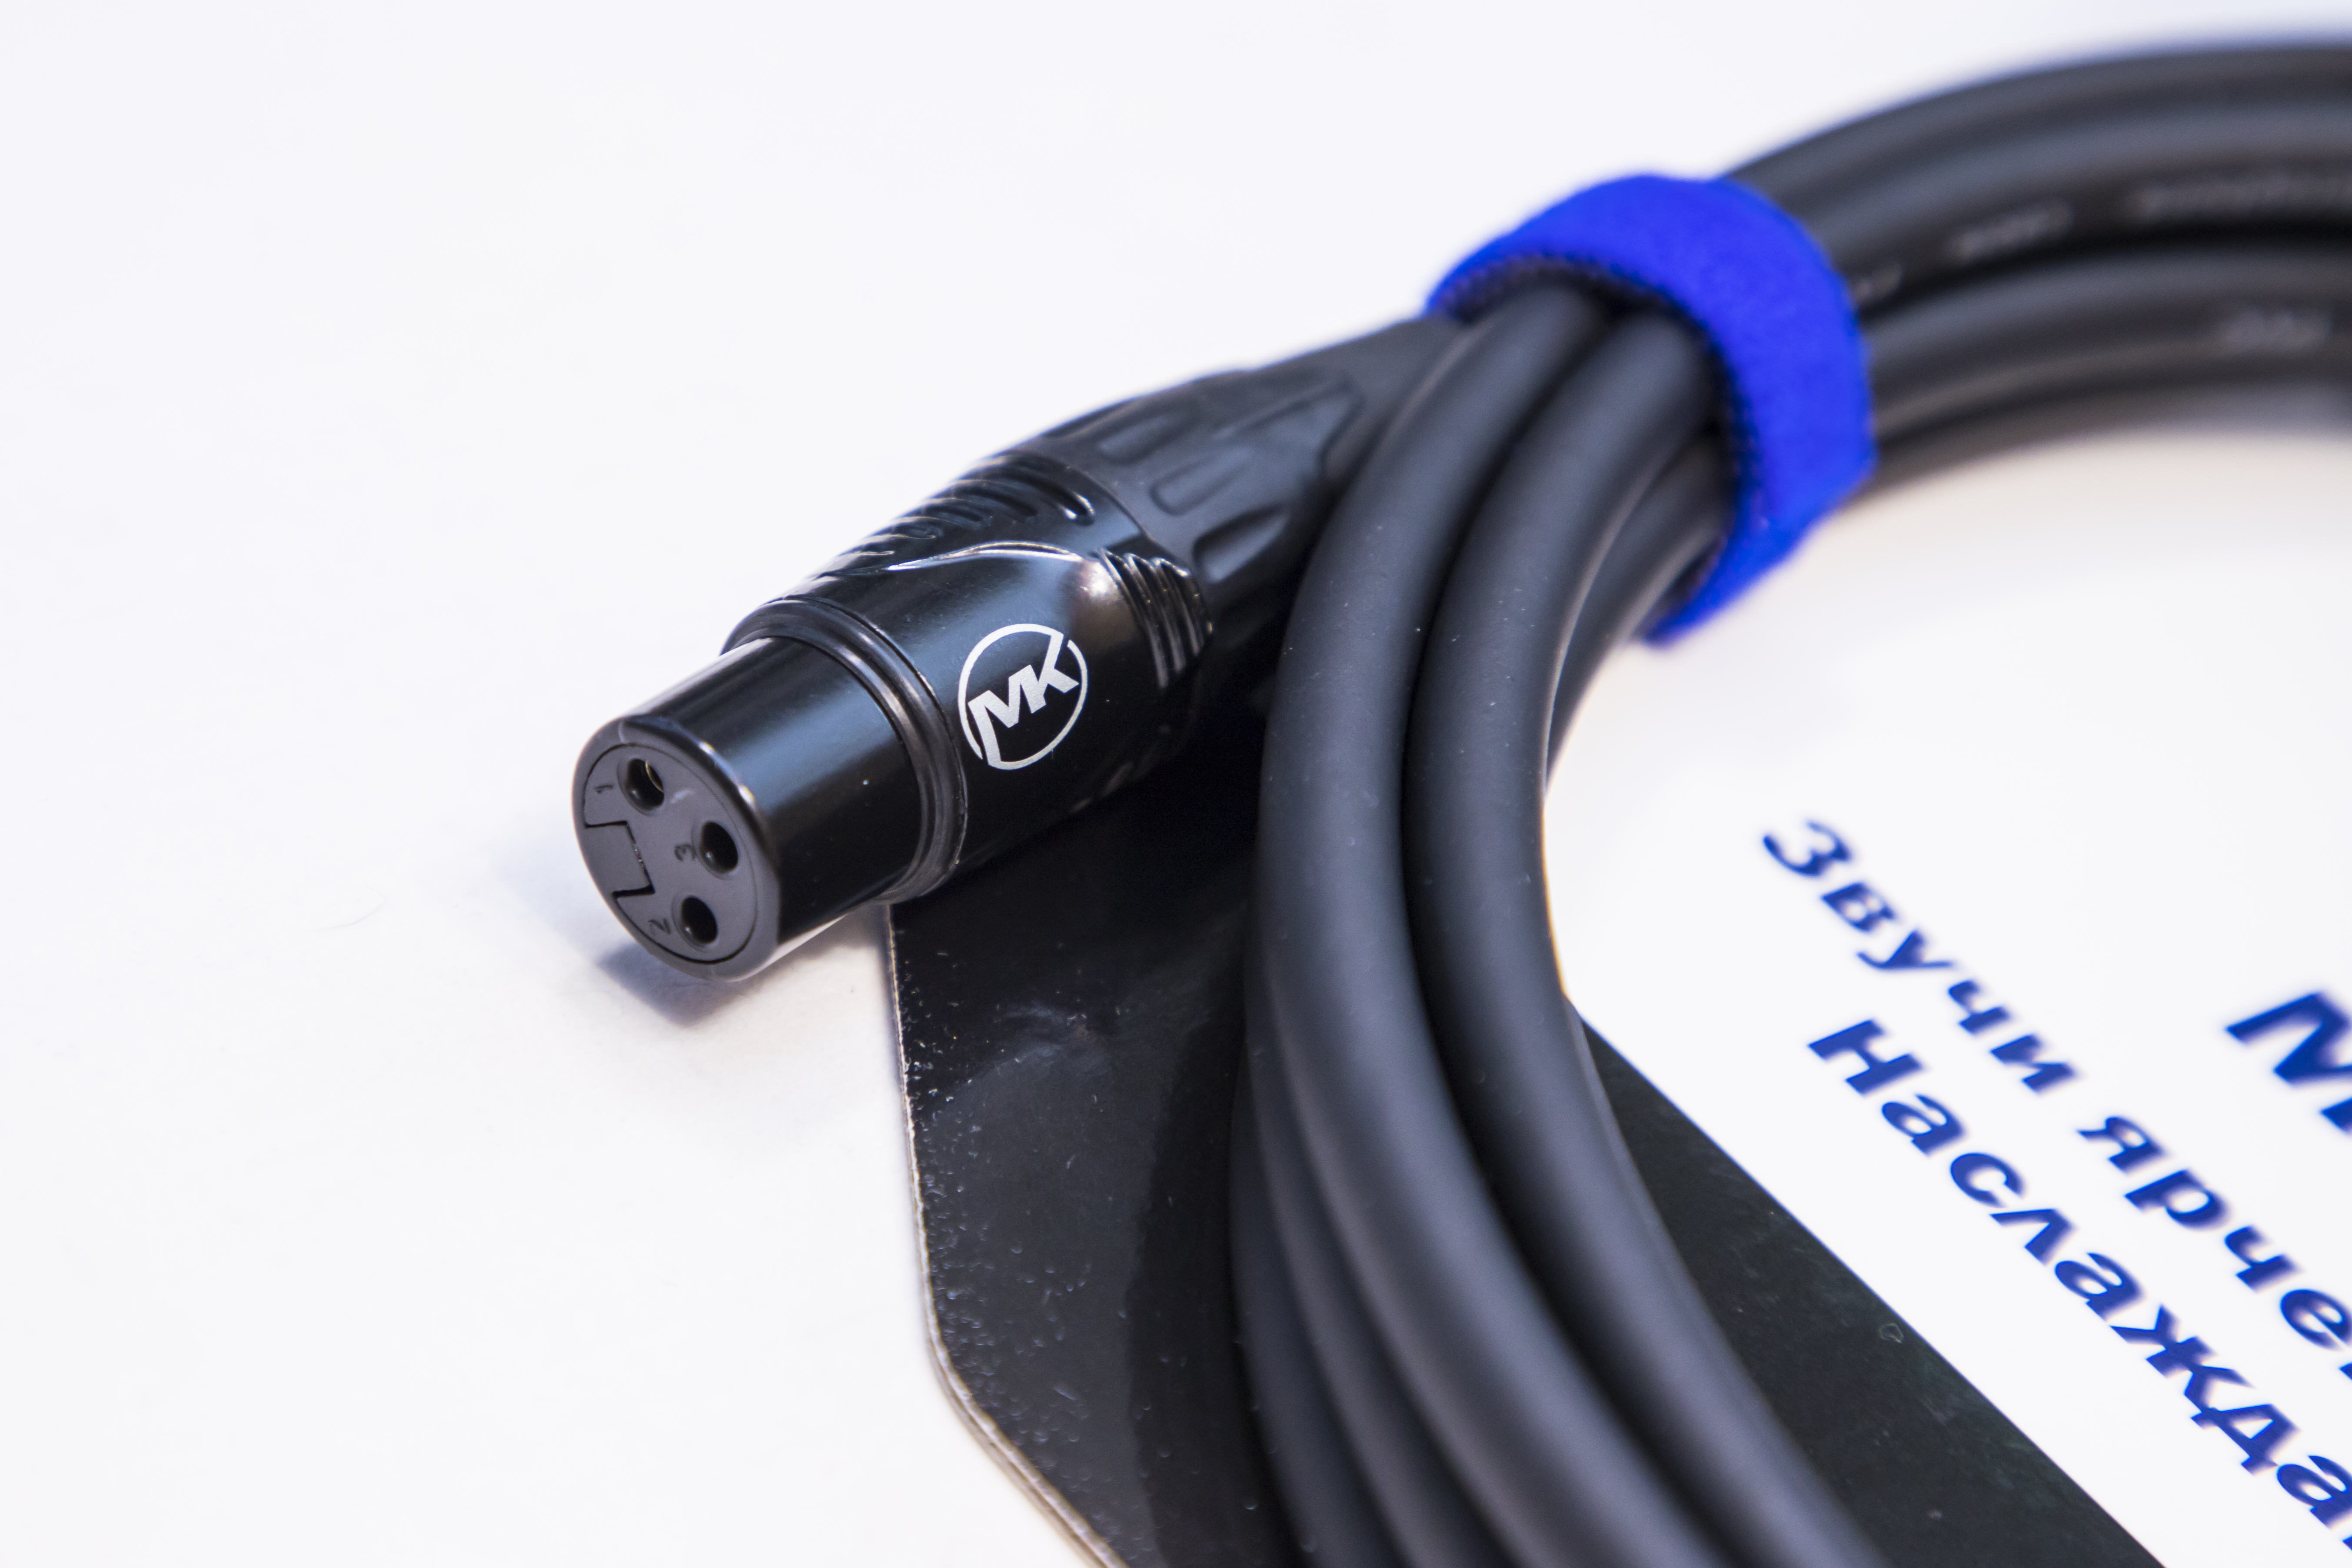 Микрофонный кабель MUZKABEL XXFMK1B - 2 метра, XLR – XLR